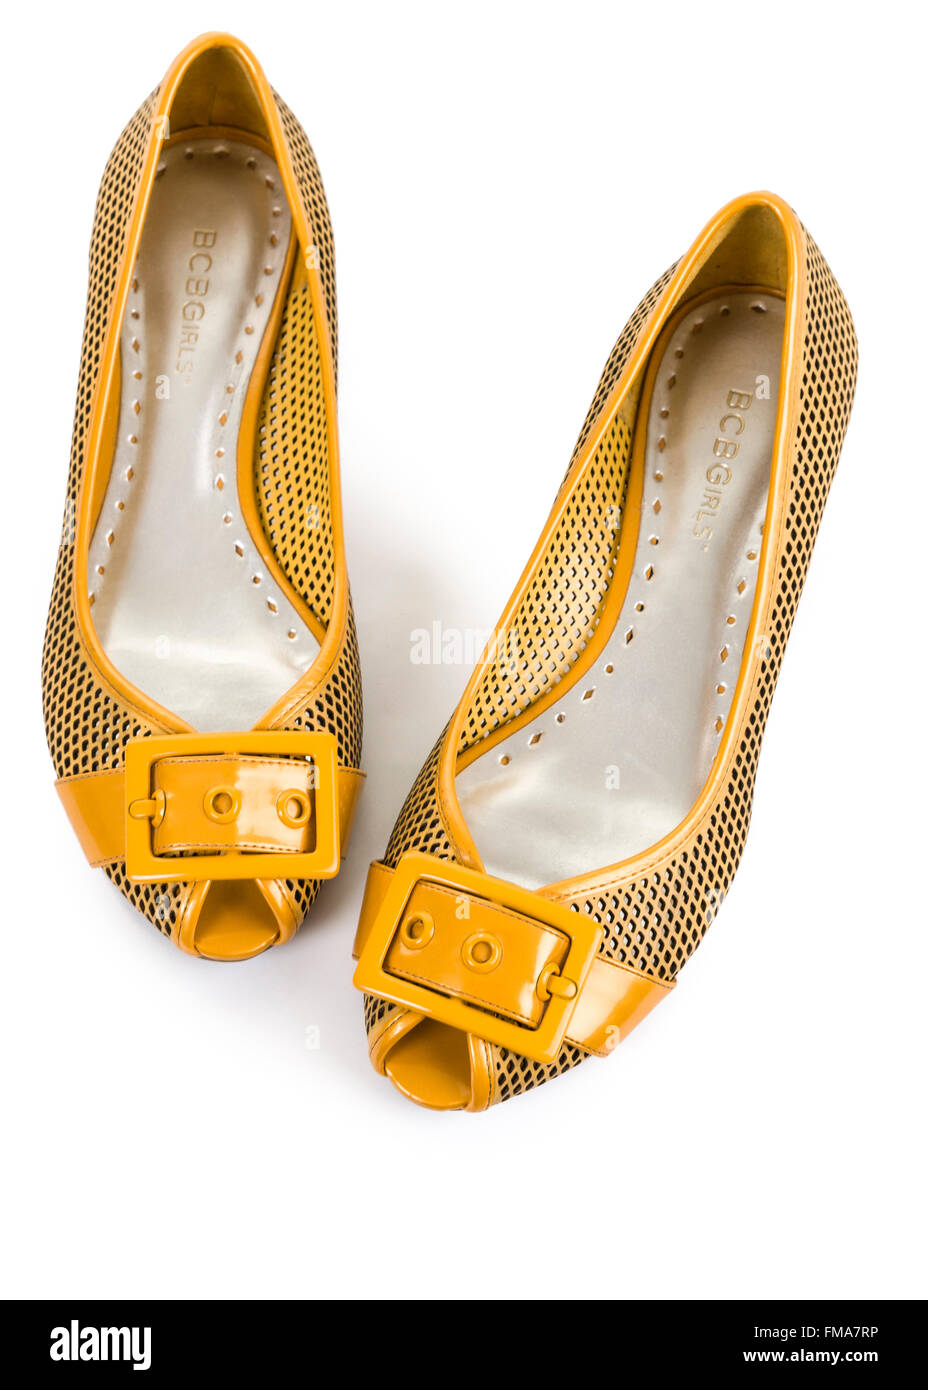 Gelbe Lackleder ballerina Flachbild open toe Pumps Schuhe auf weißem Hintergrund isoliert Model Release: Nein Property Release: Nein. Stockfoto